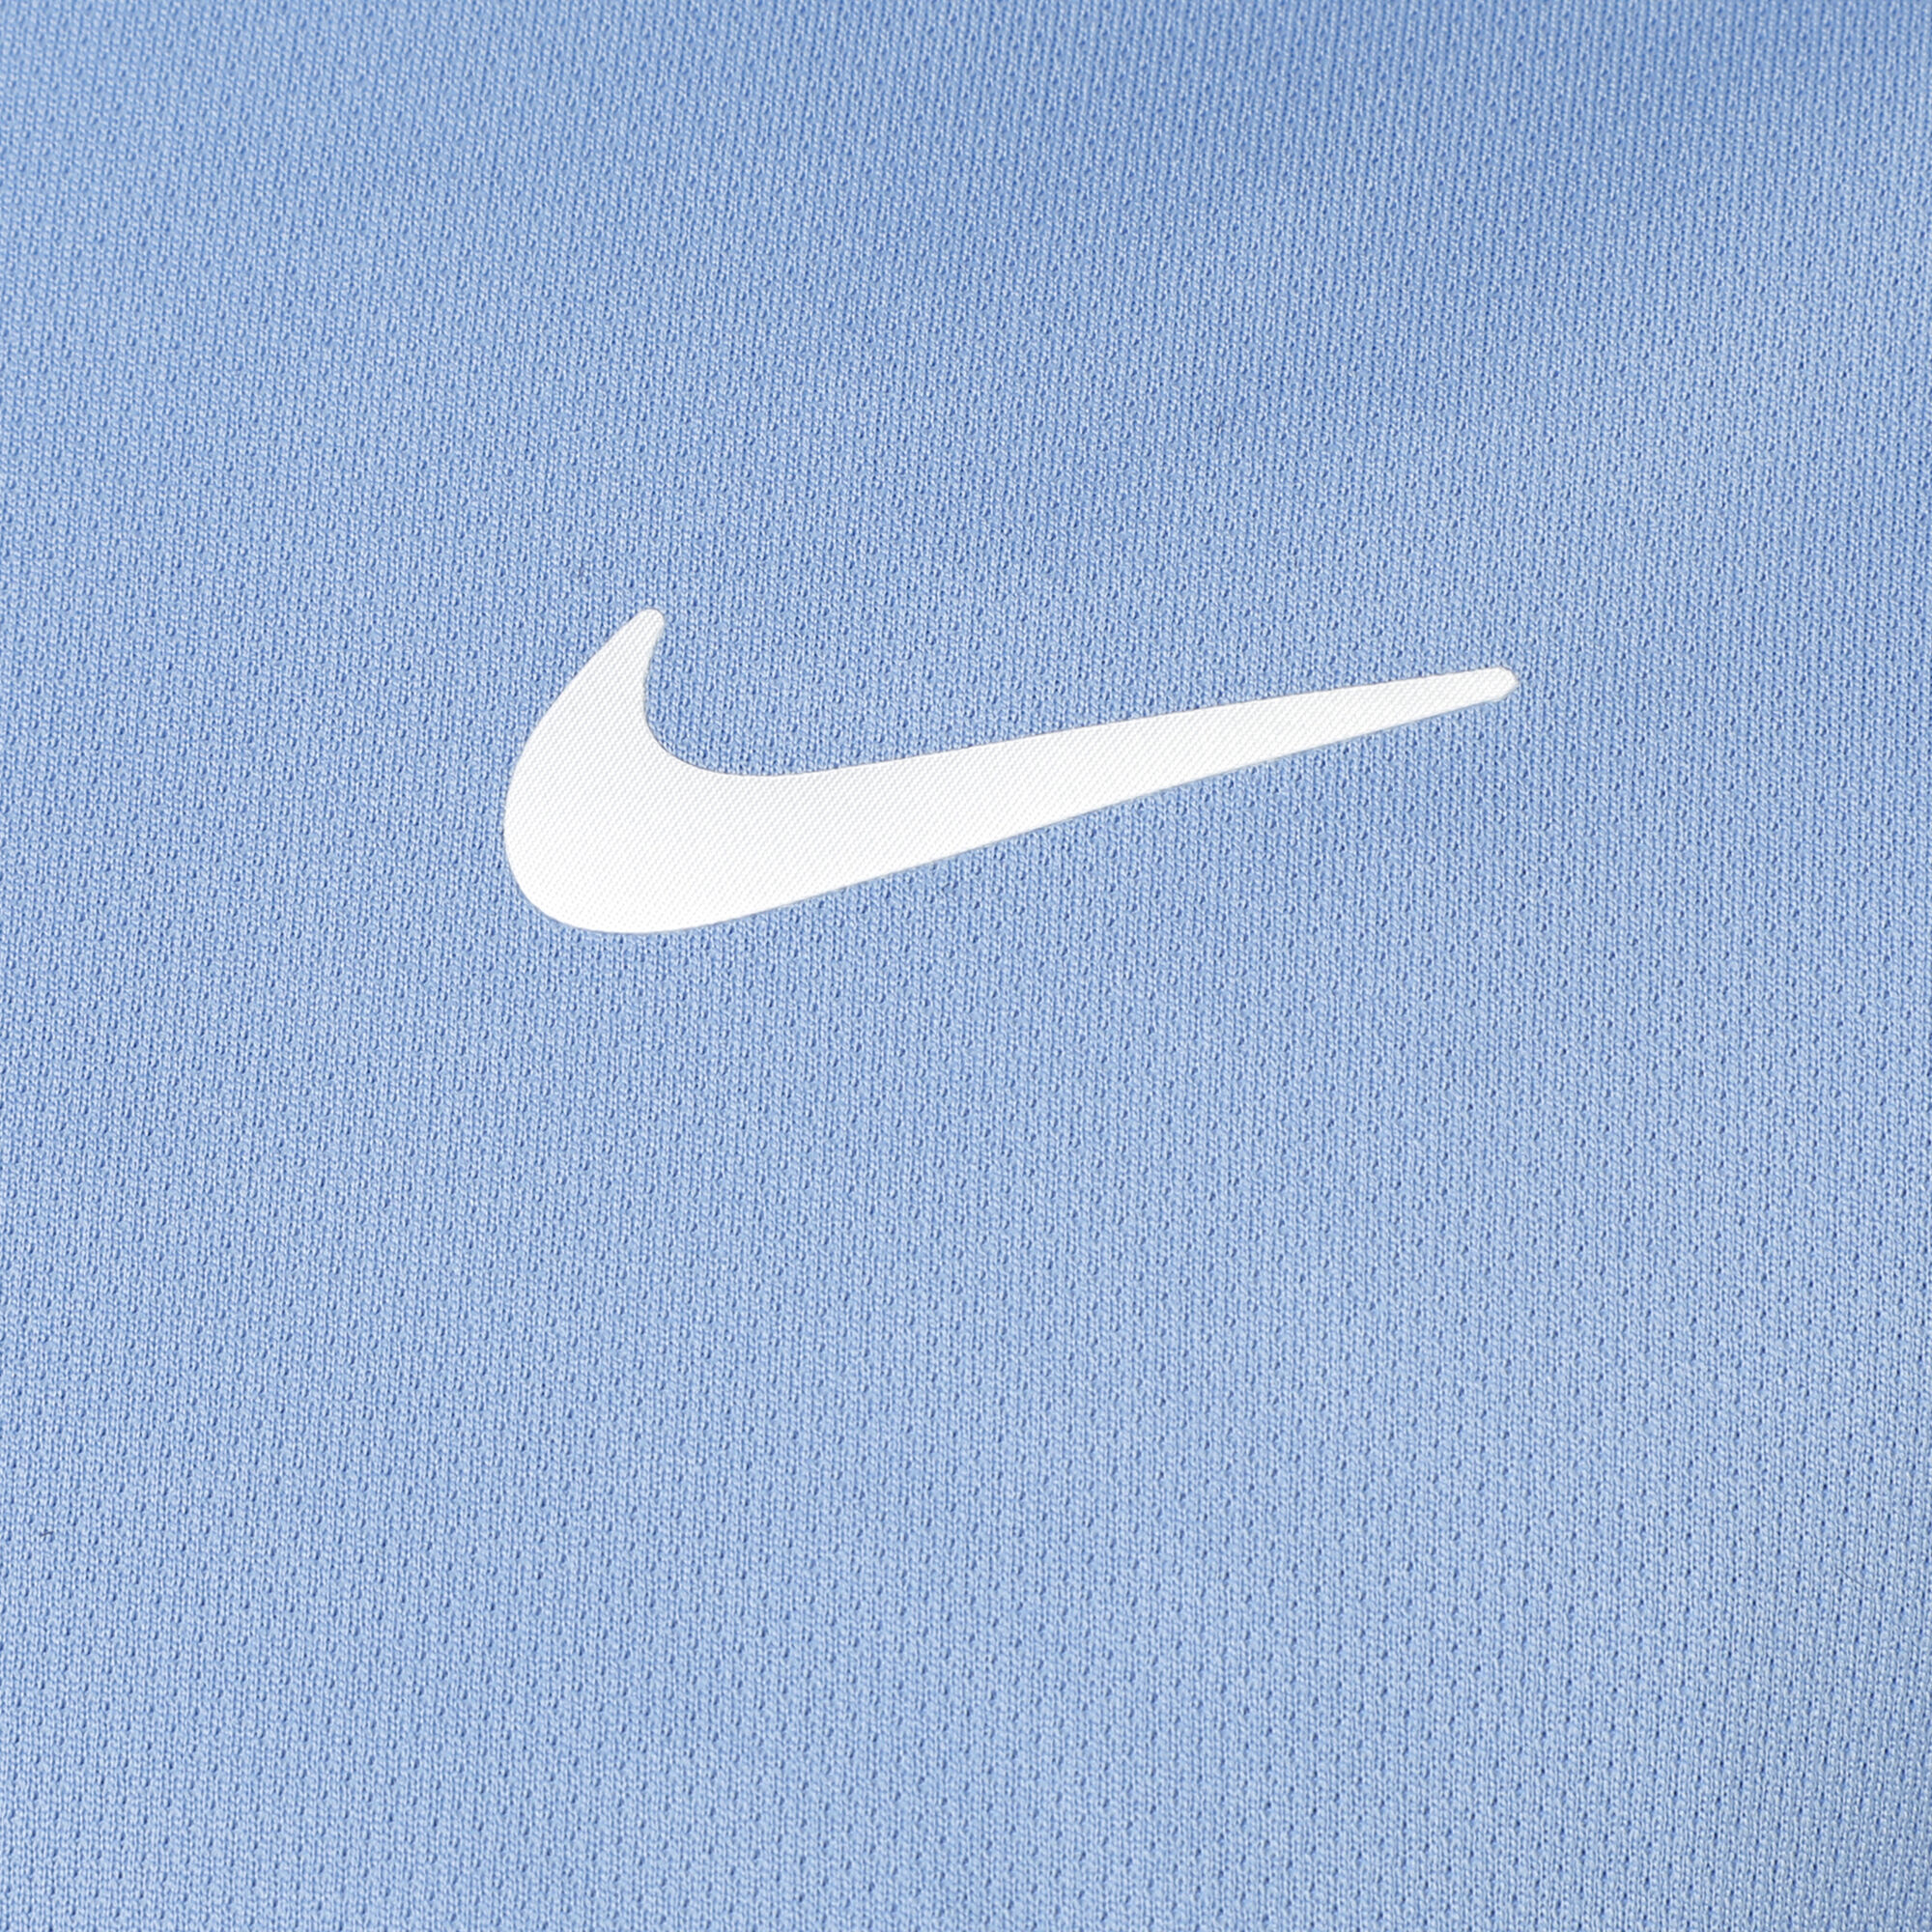 Buy Nike Court Dry Polo Men Light Blue, White online | Tennis Point UK